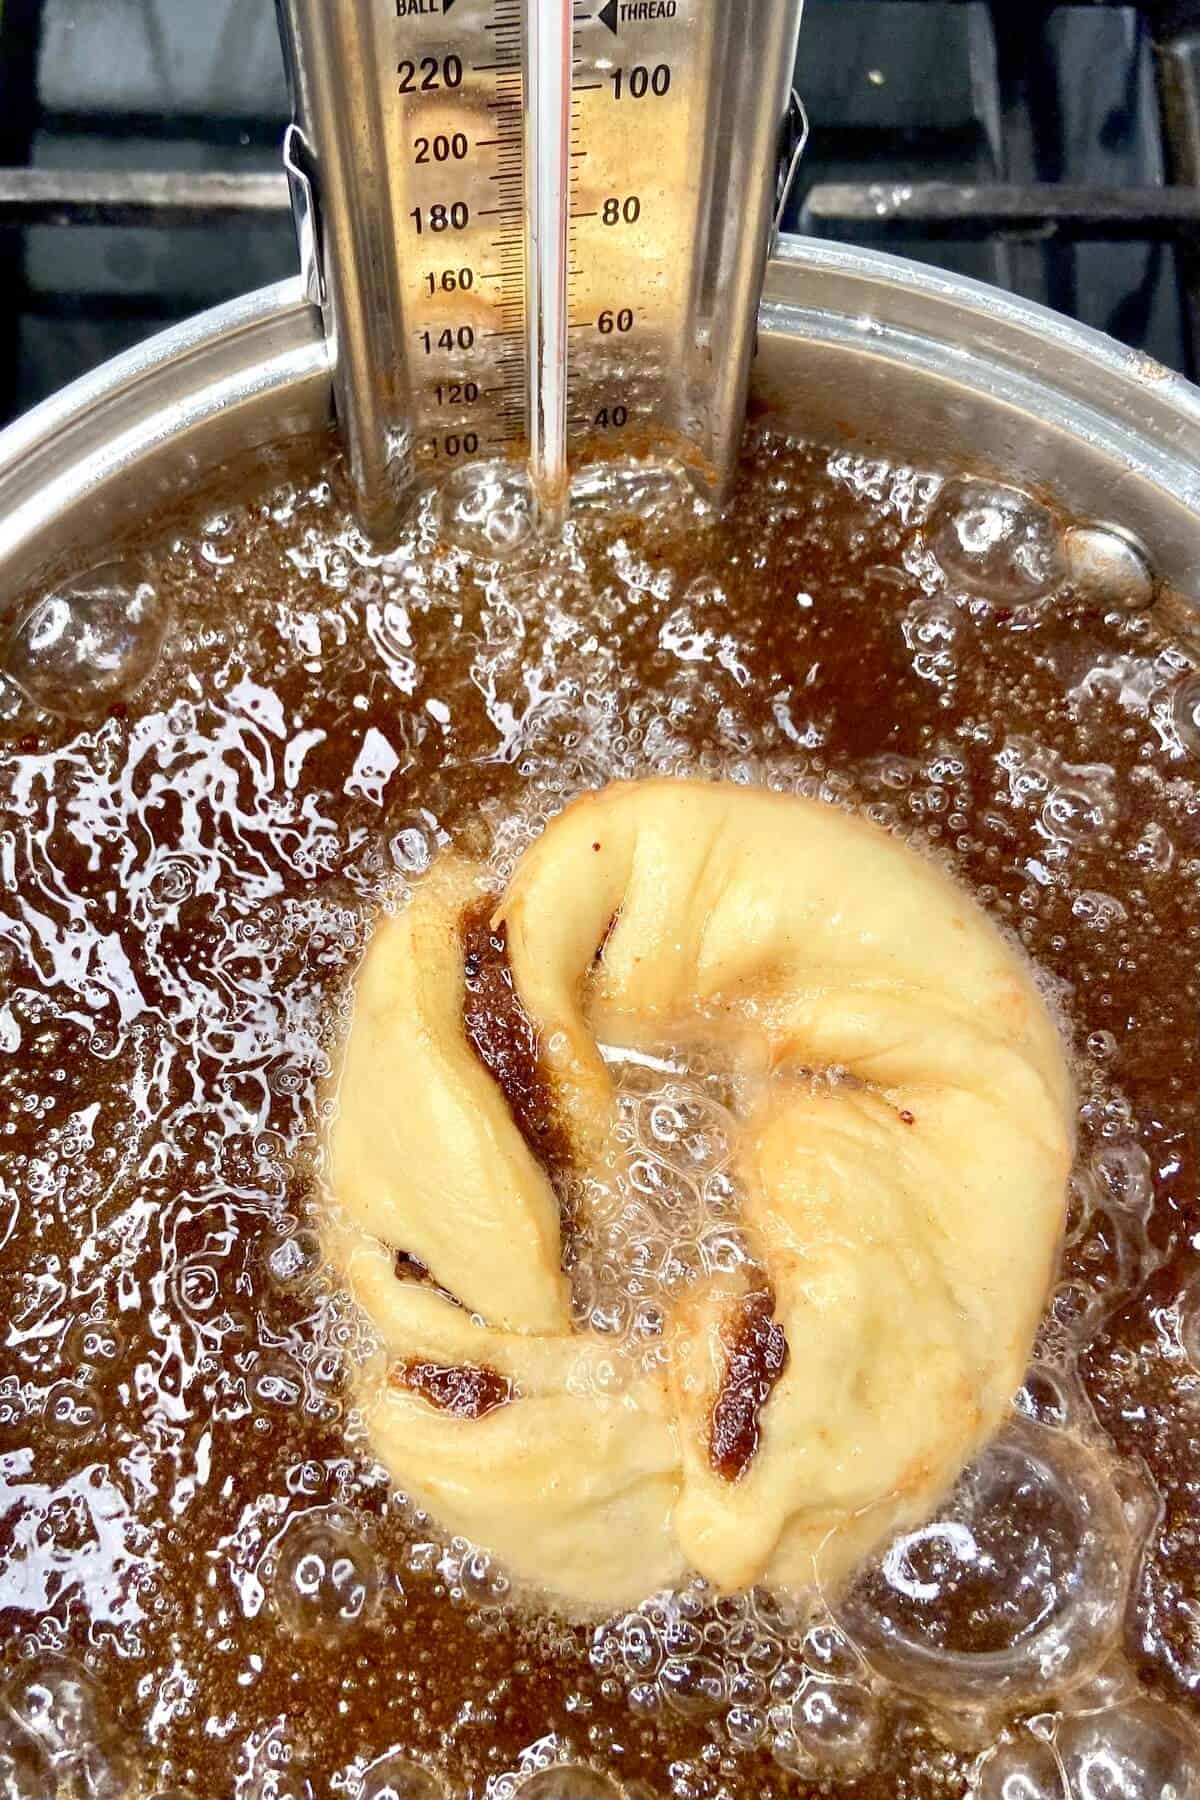 Placing donut in oil.